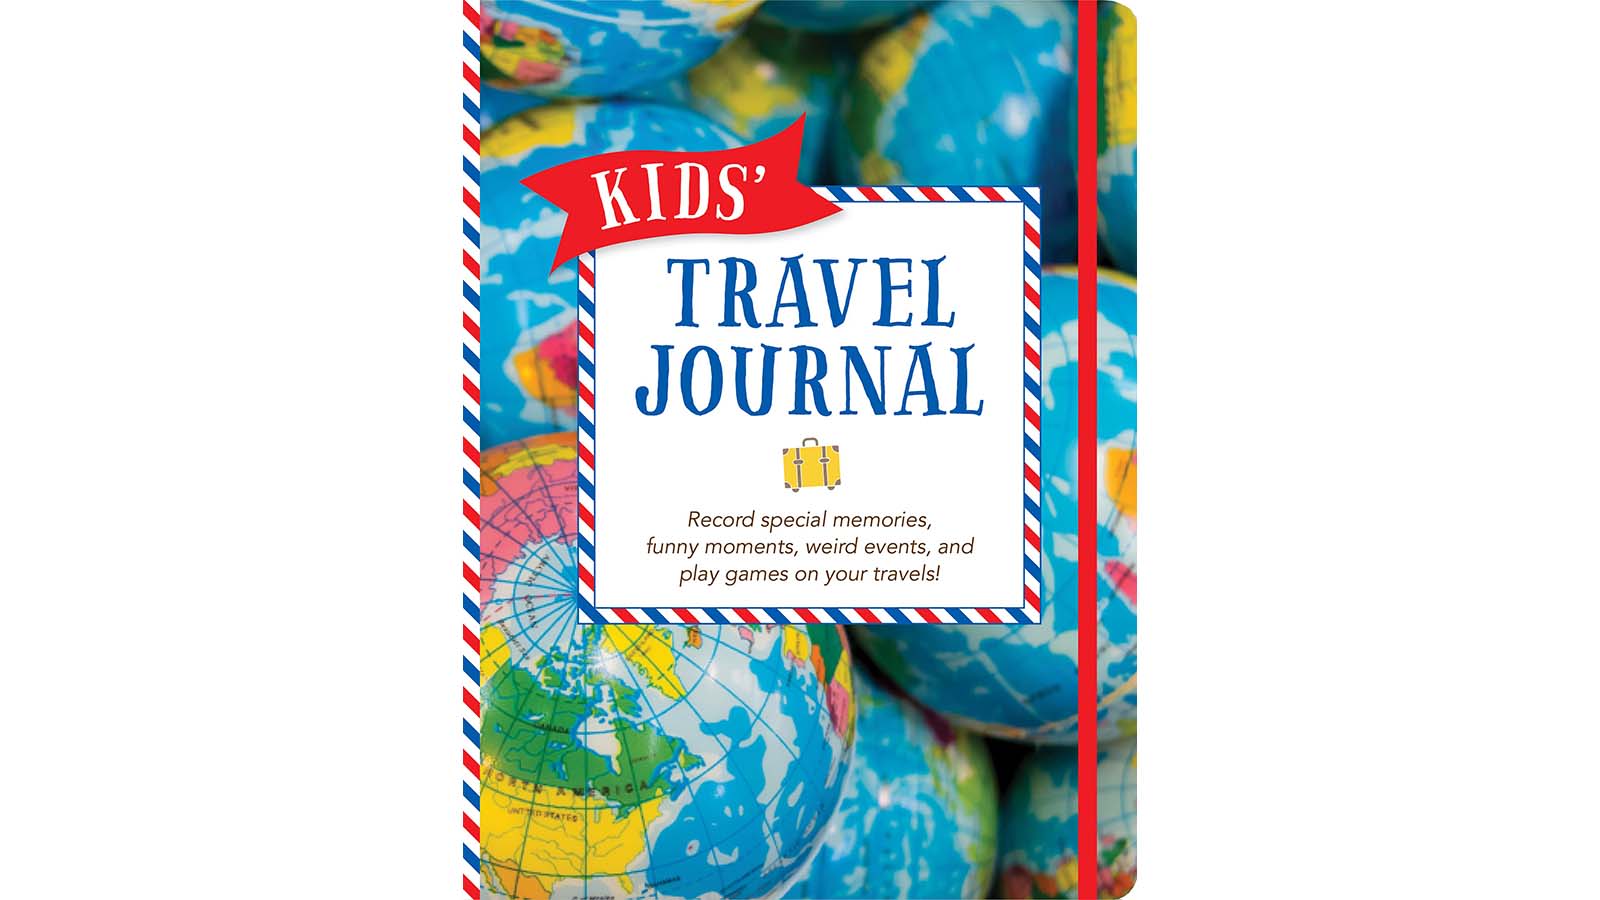 World Explorer Travel Journal - Children's Trip Diary - Paperback - New